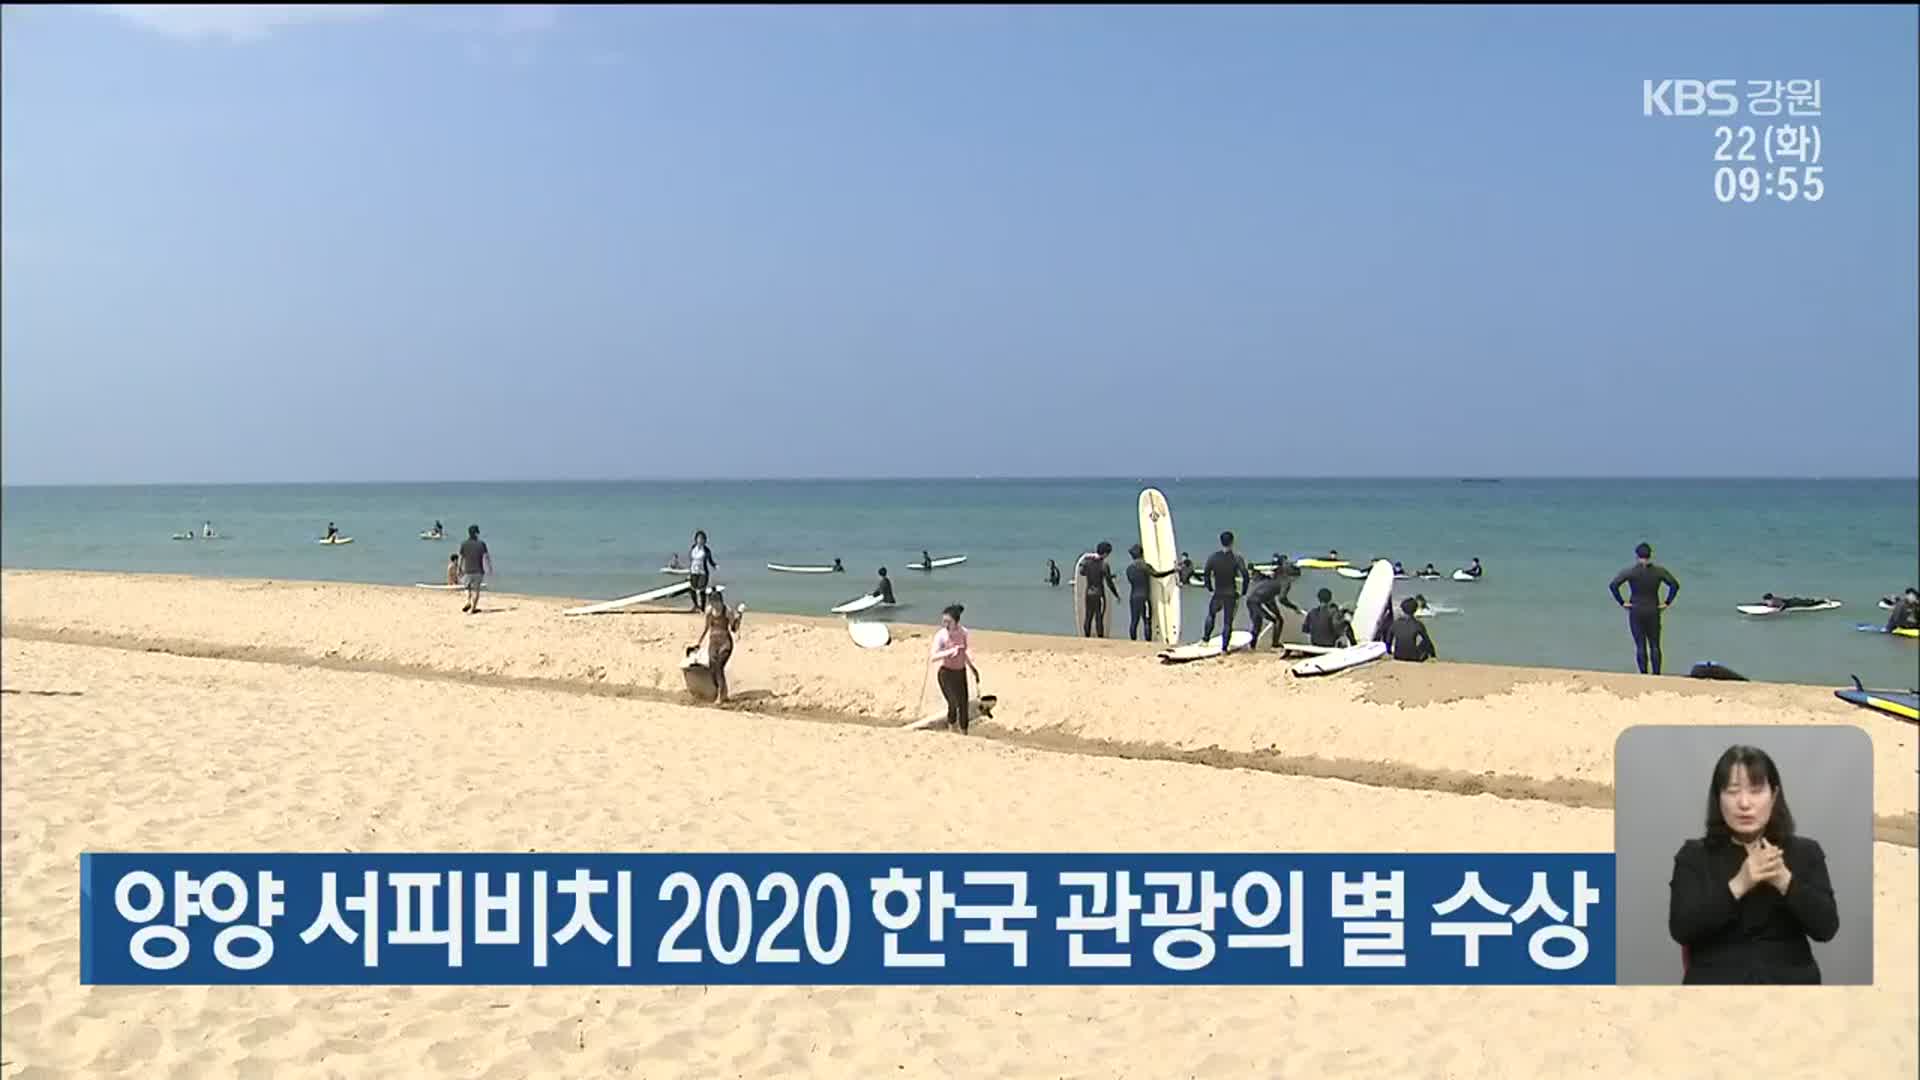 양양 서피비치 2020 한국 관광의 별 수상